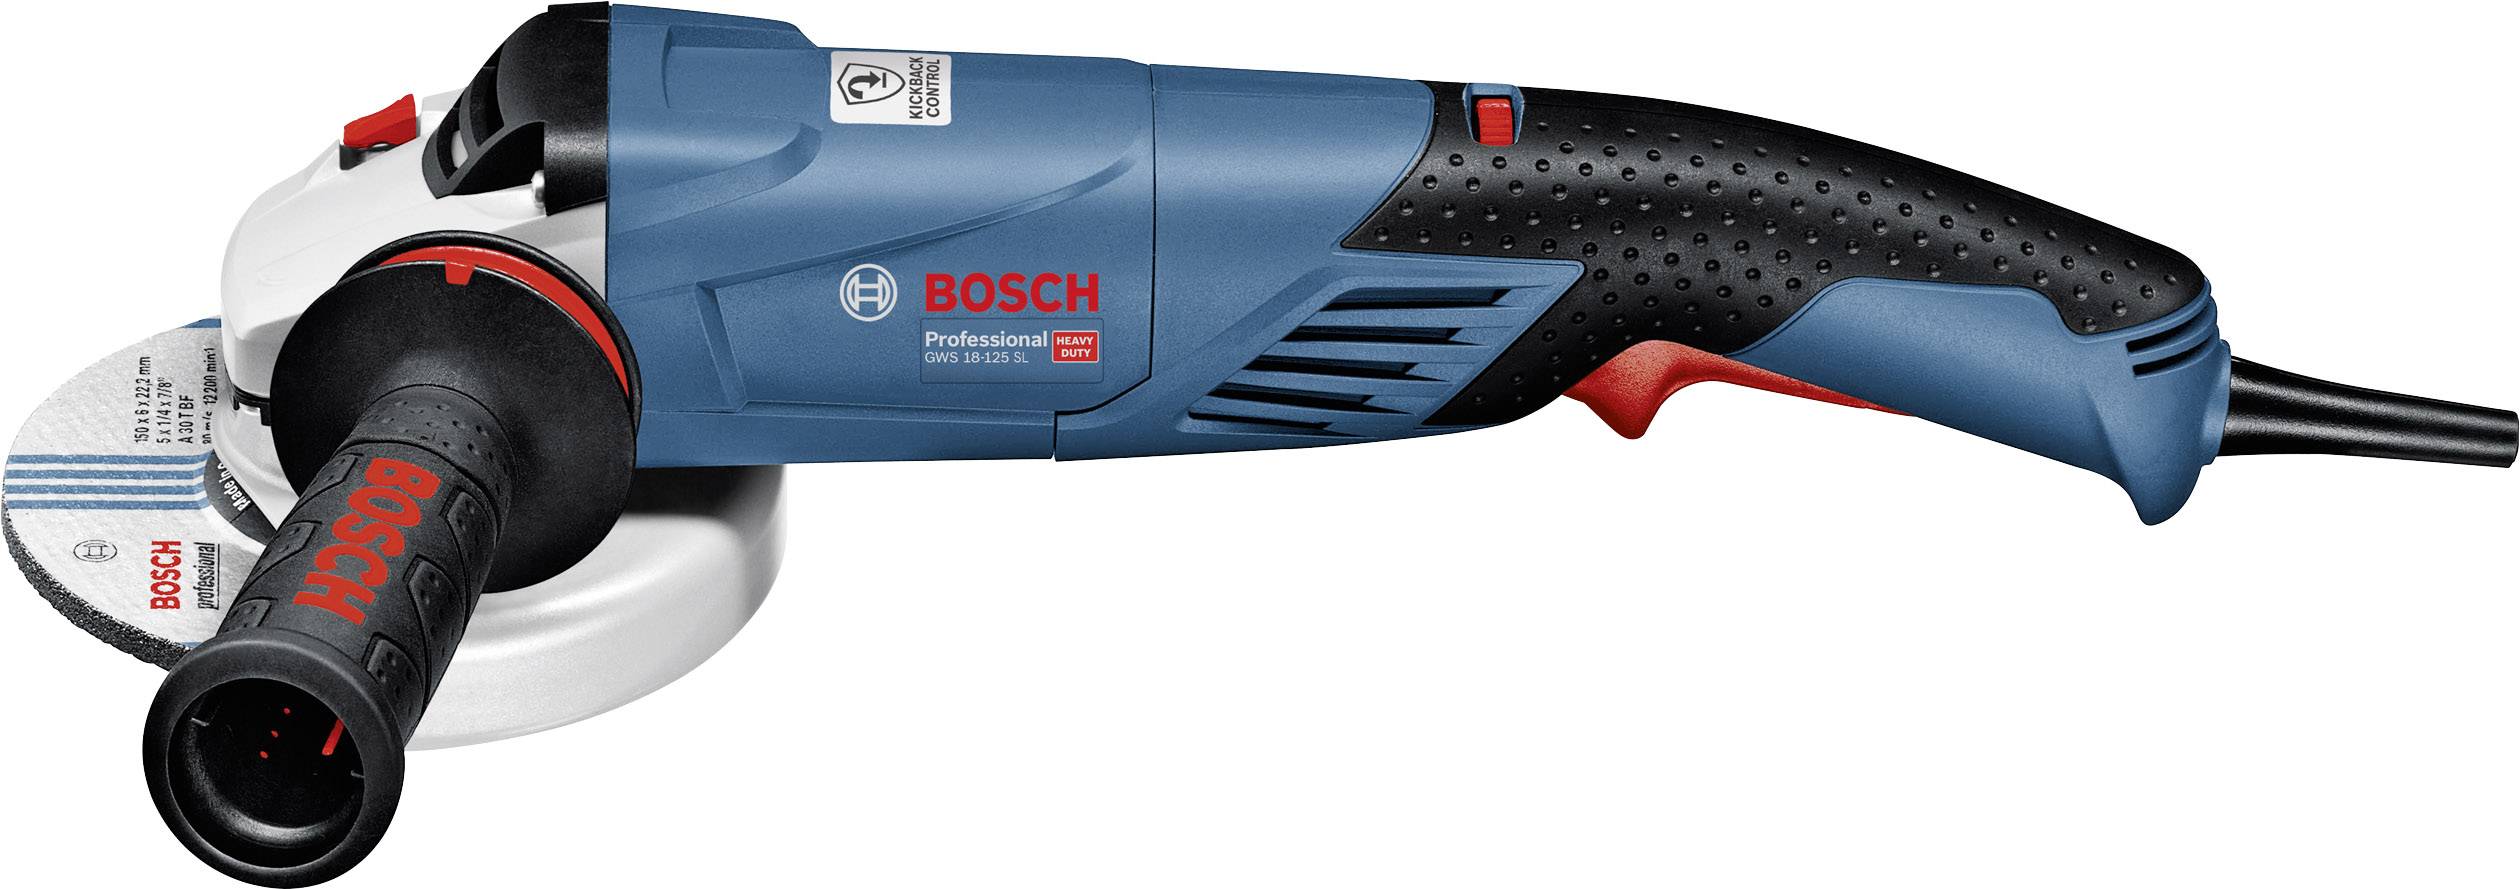 Szlifierka kątowa Bosch Professional GWS 18-125 SPL, 06017A3300 | Zamów .